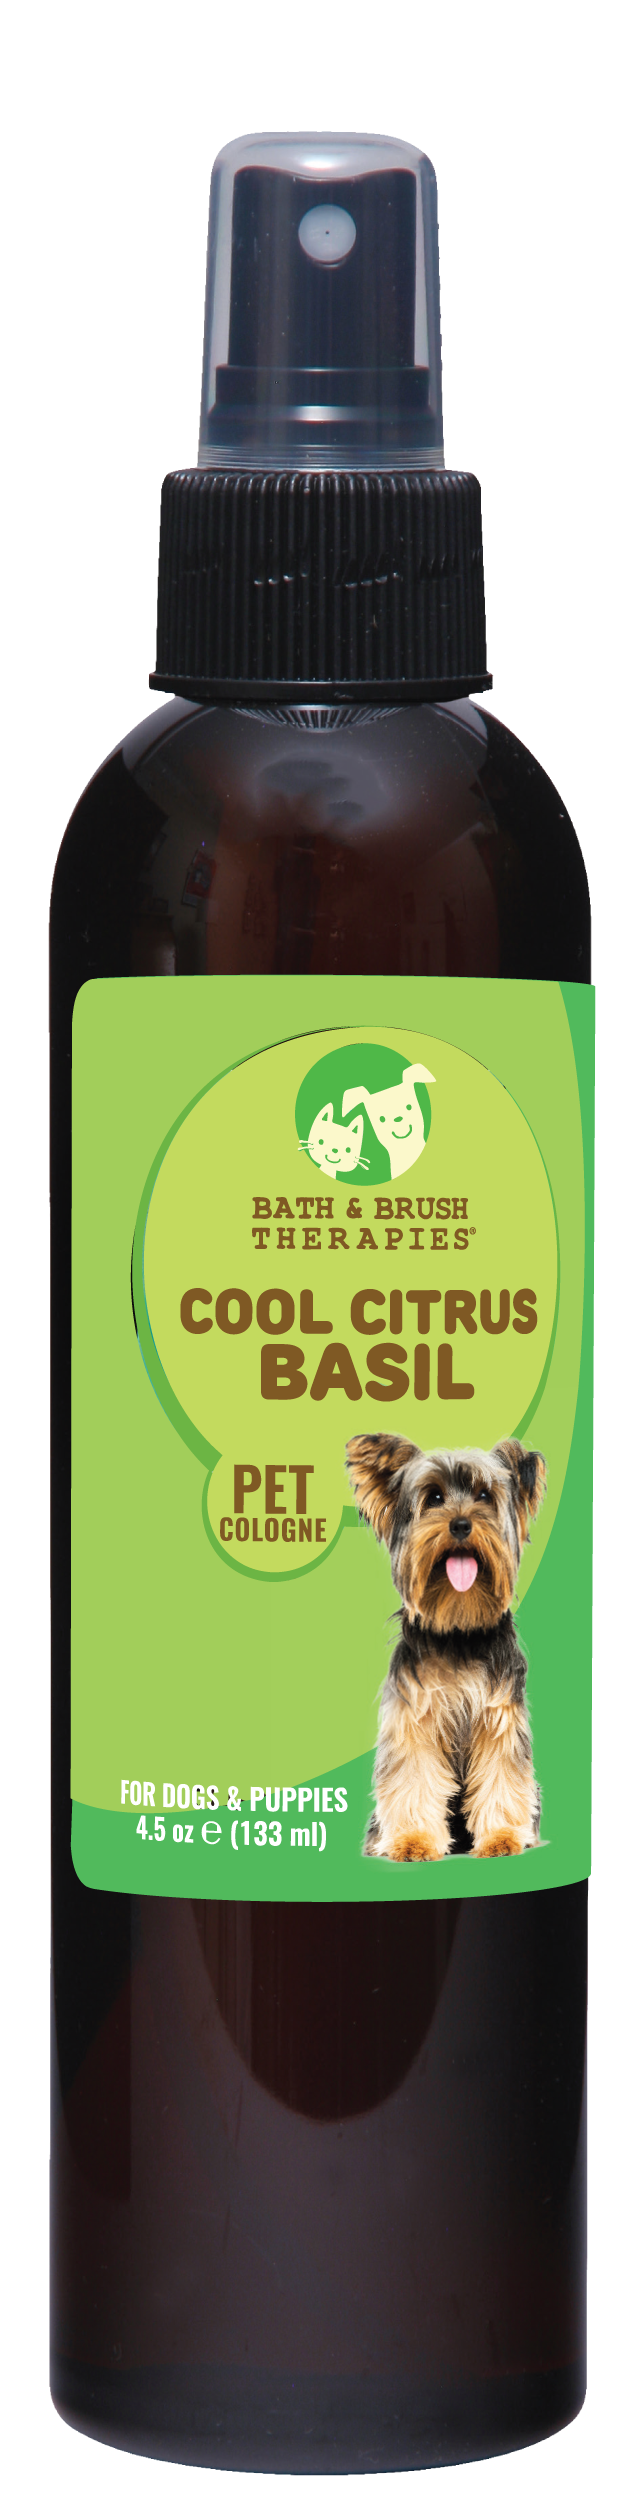 Cool Citrus Basil Pet Cologne